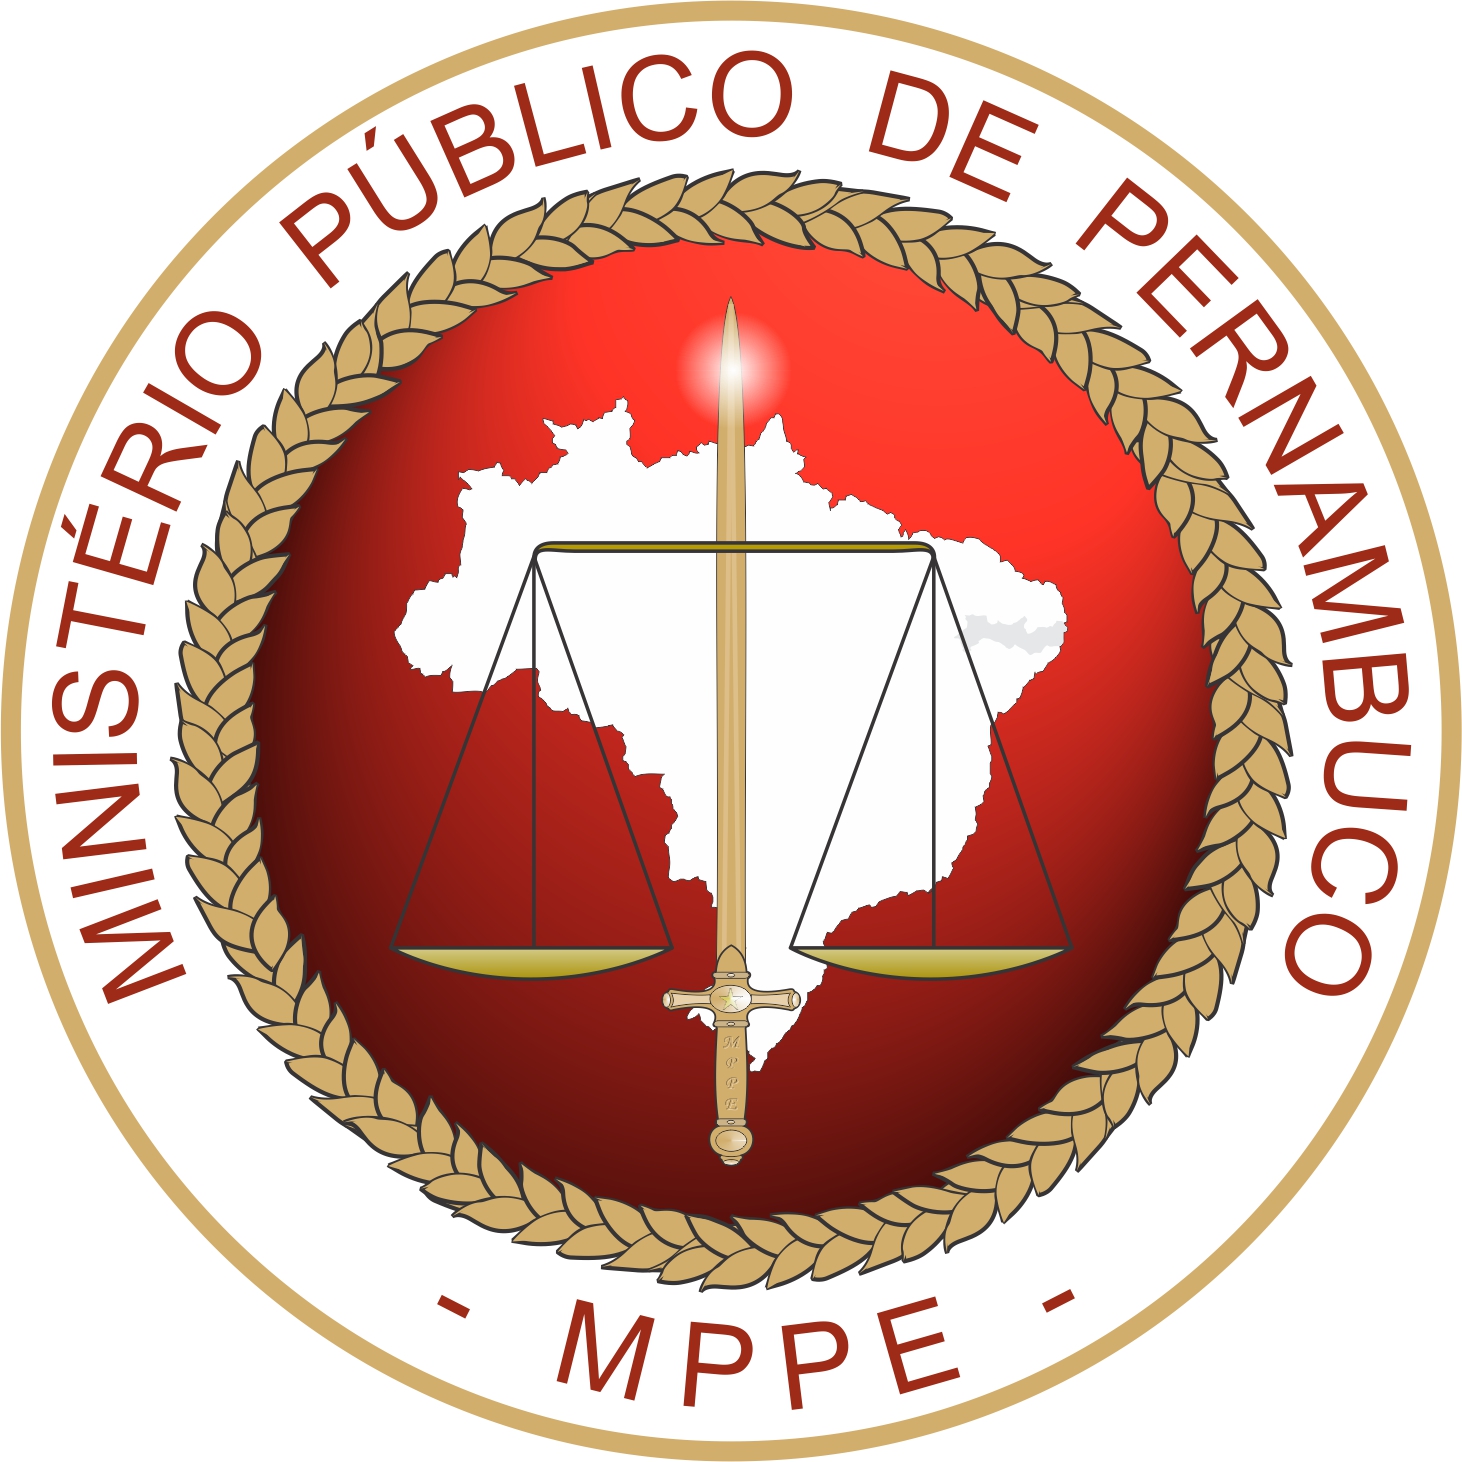 Edital MP PE: Emblema do orgão